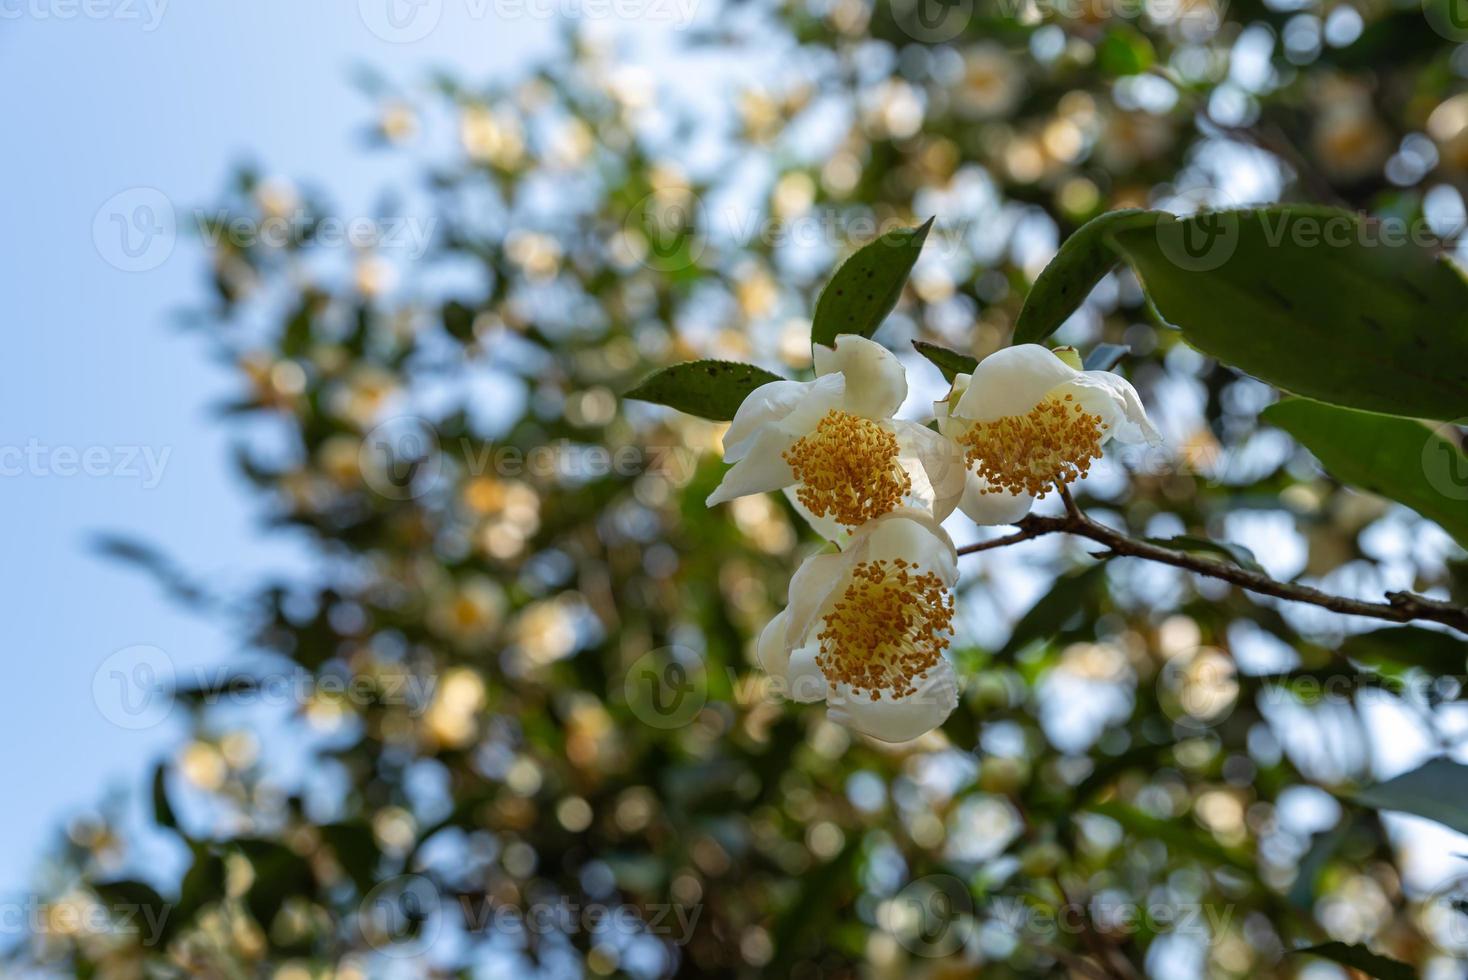 bajo el sol, flores de té con pétalos blancos y núcleos de flores amarillas se encuentran en el bosque de té salvaje foto